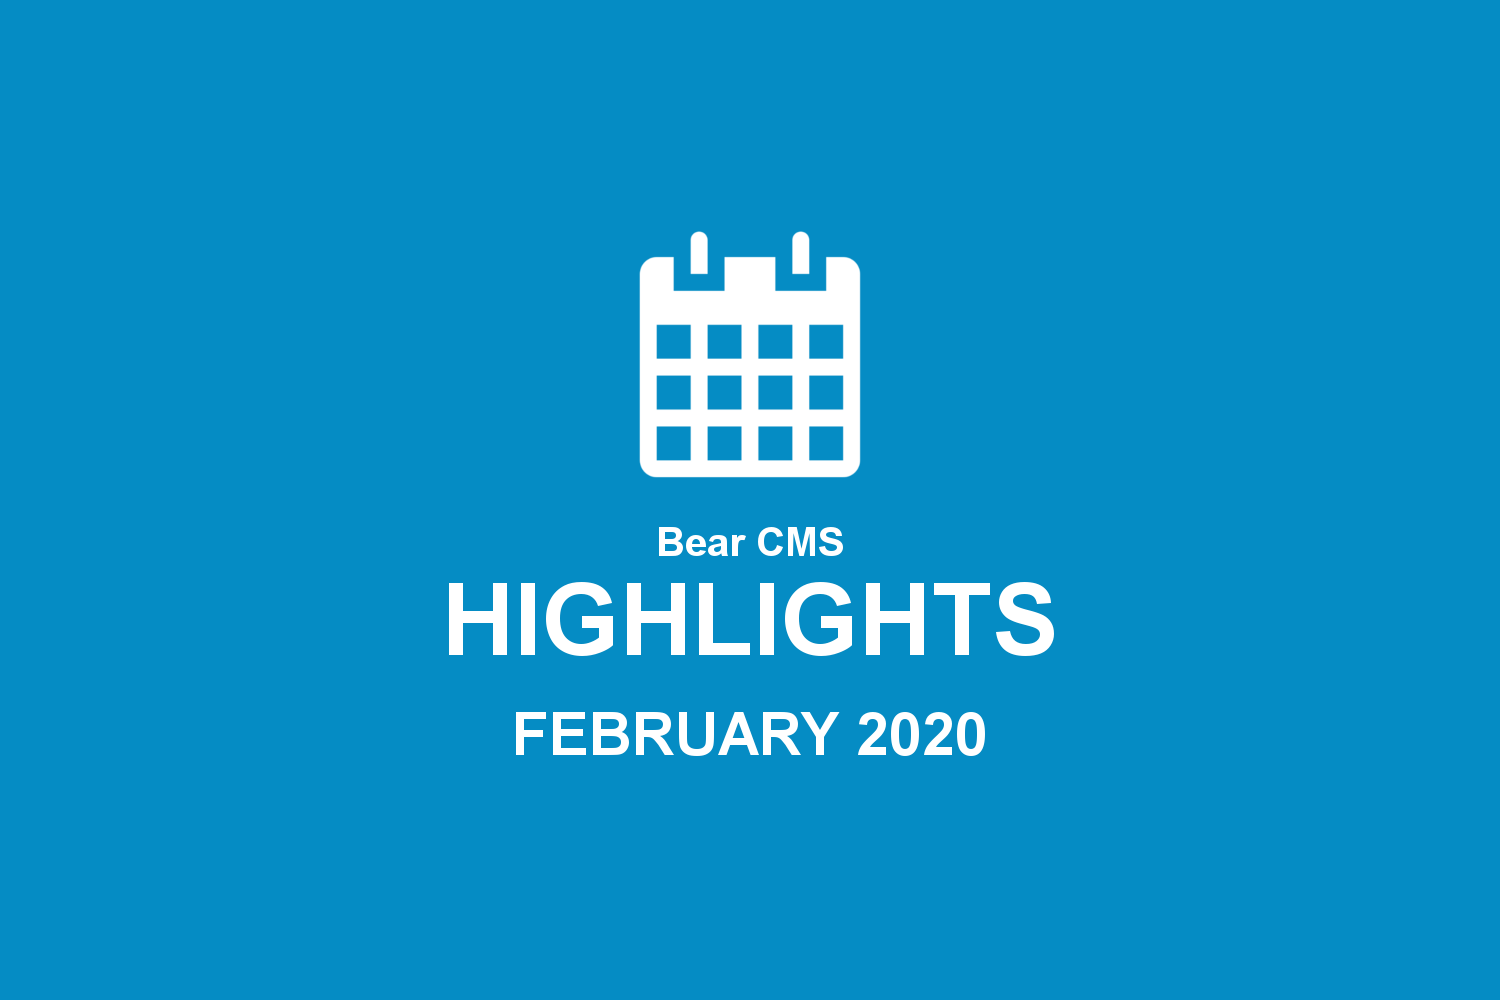 Bear CMS highlights (February 2020)